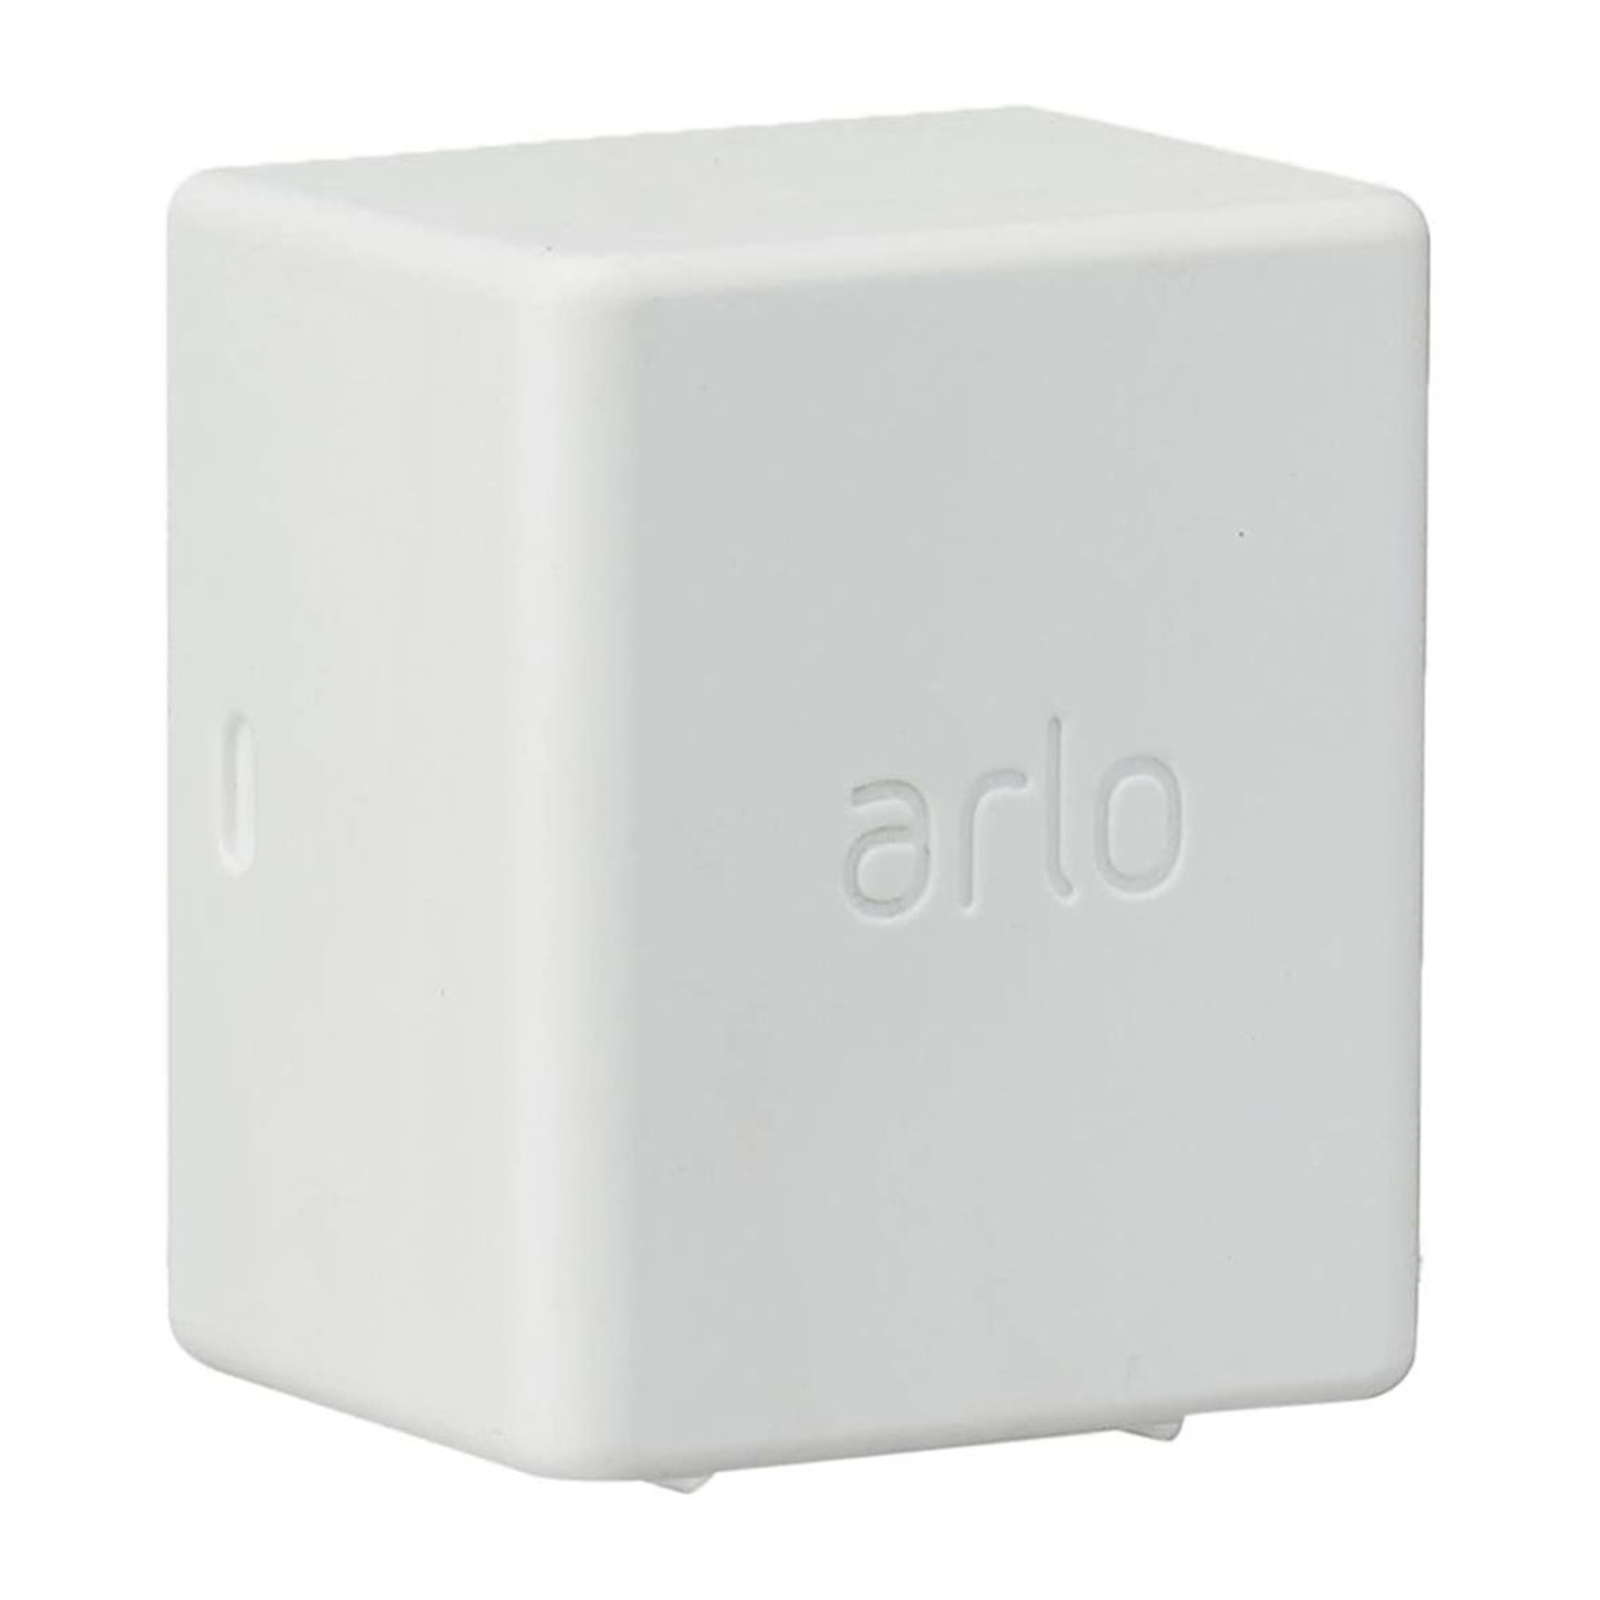 Arlo batterie rechange pour caméra Ultra, Pro3